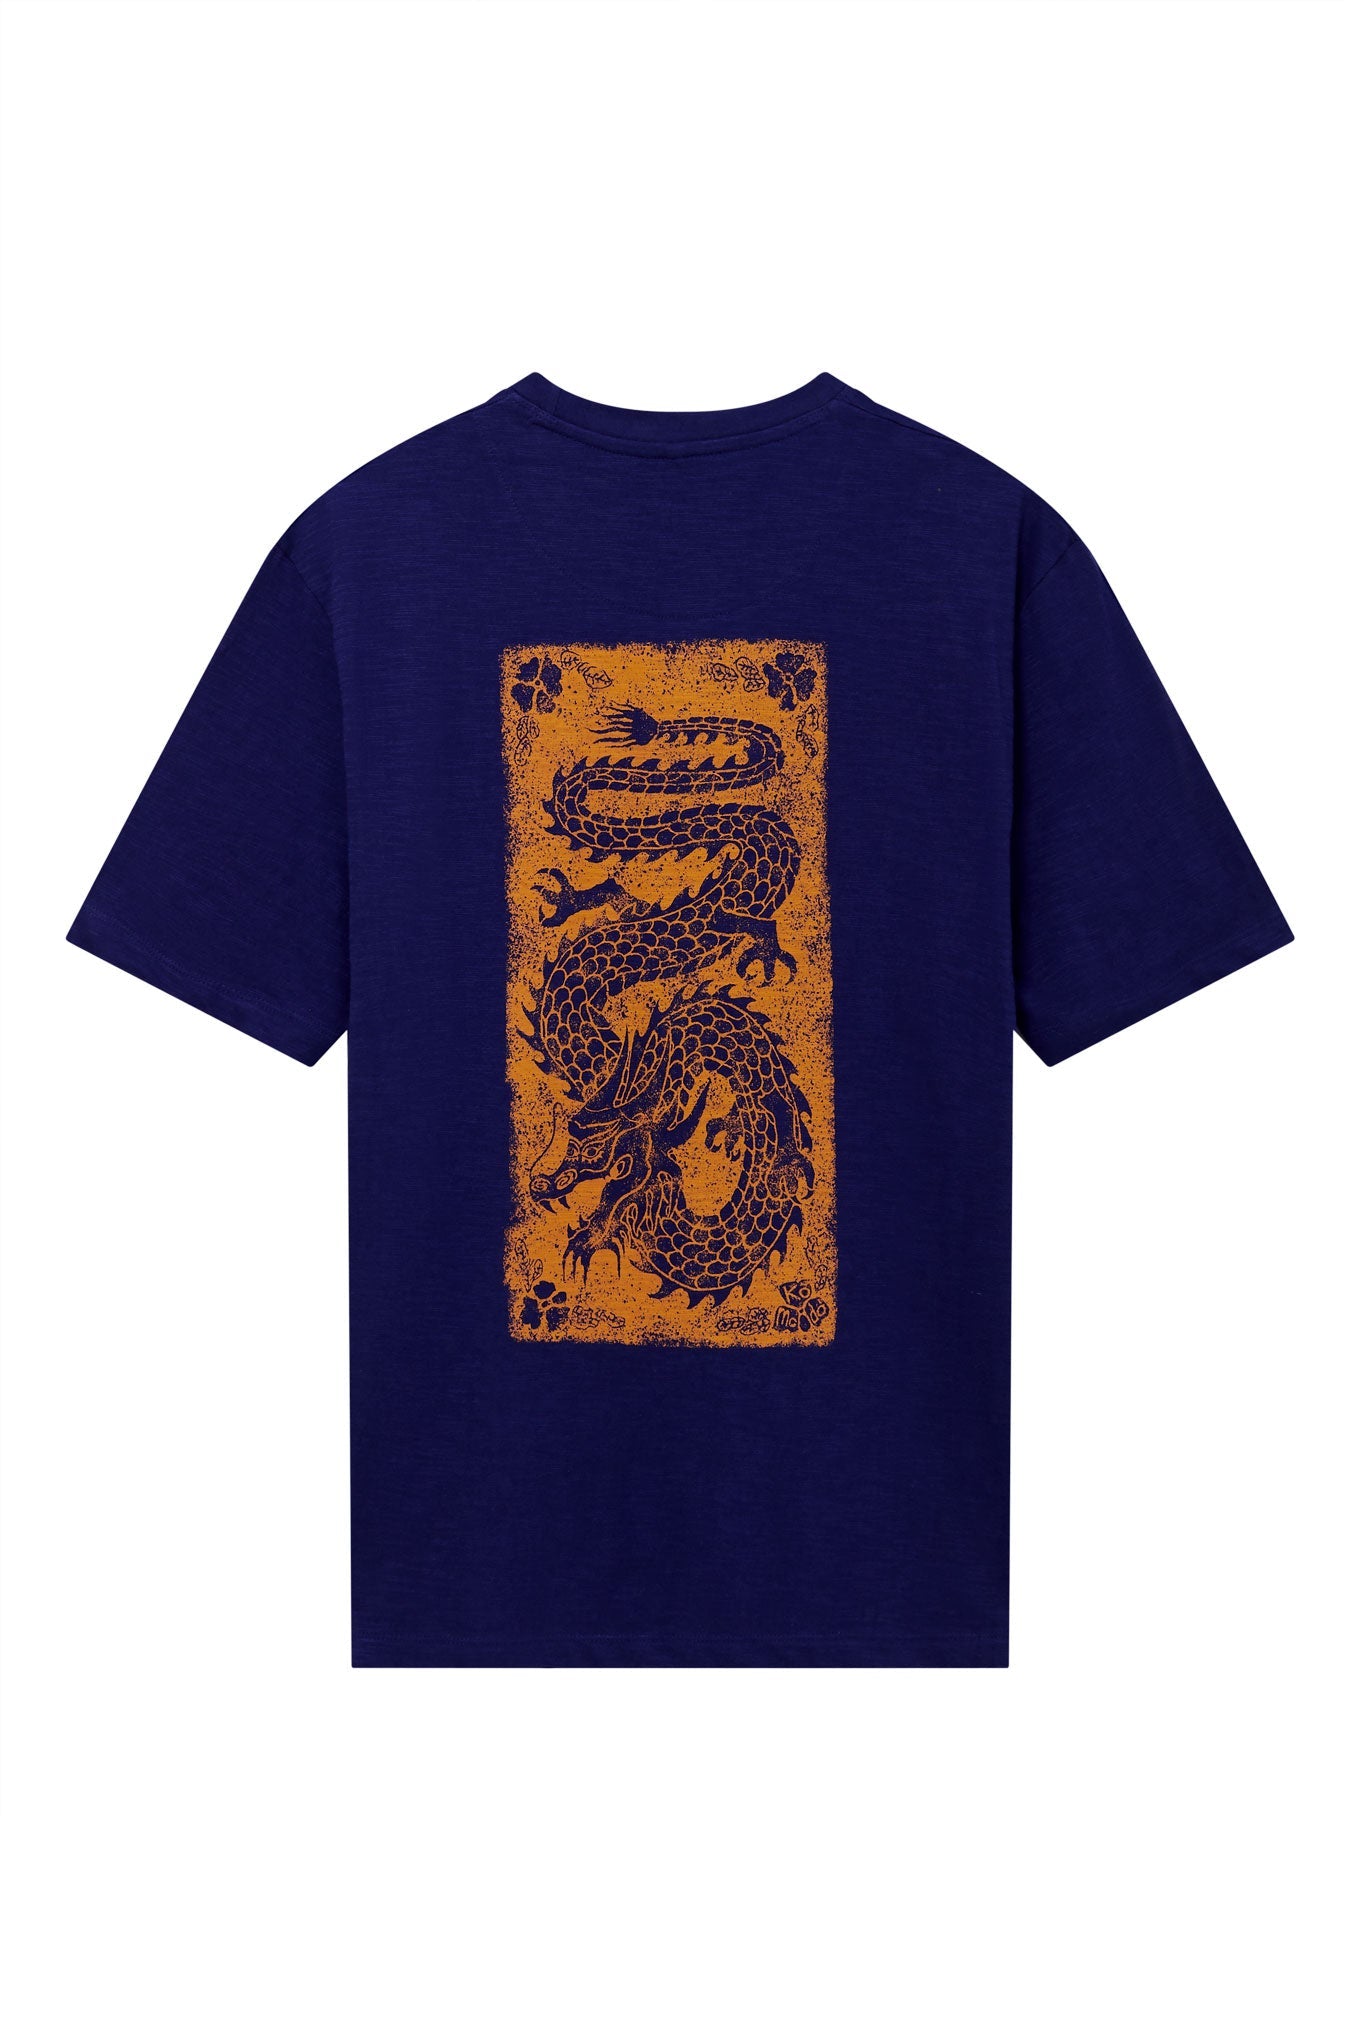 Marineblaues T-Shirt DRAGON aus 100% Bio-Baumwolle von Komodo